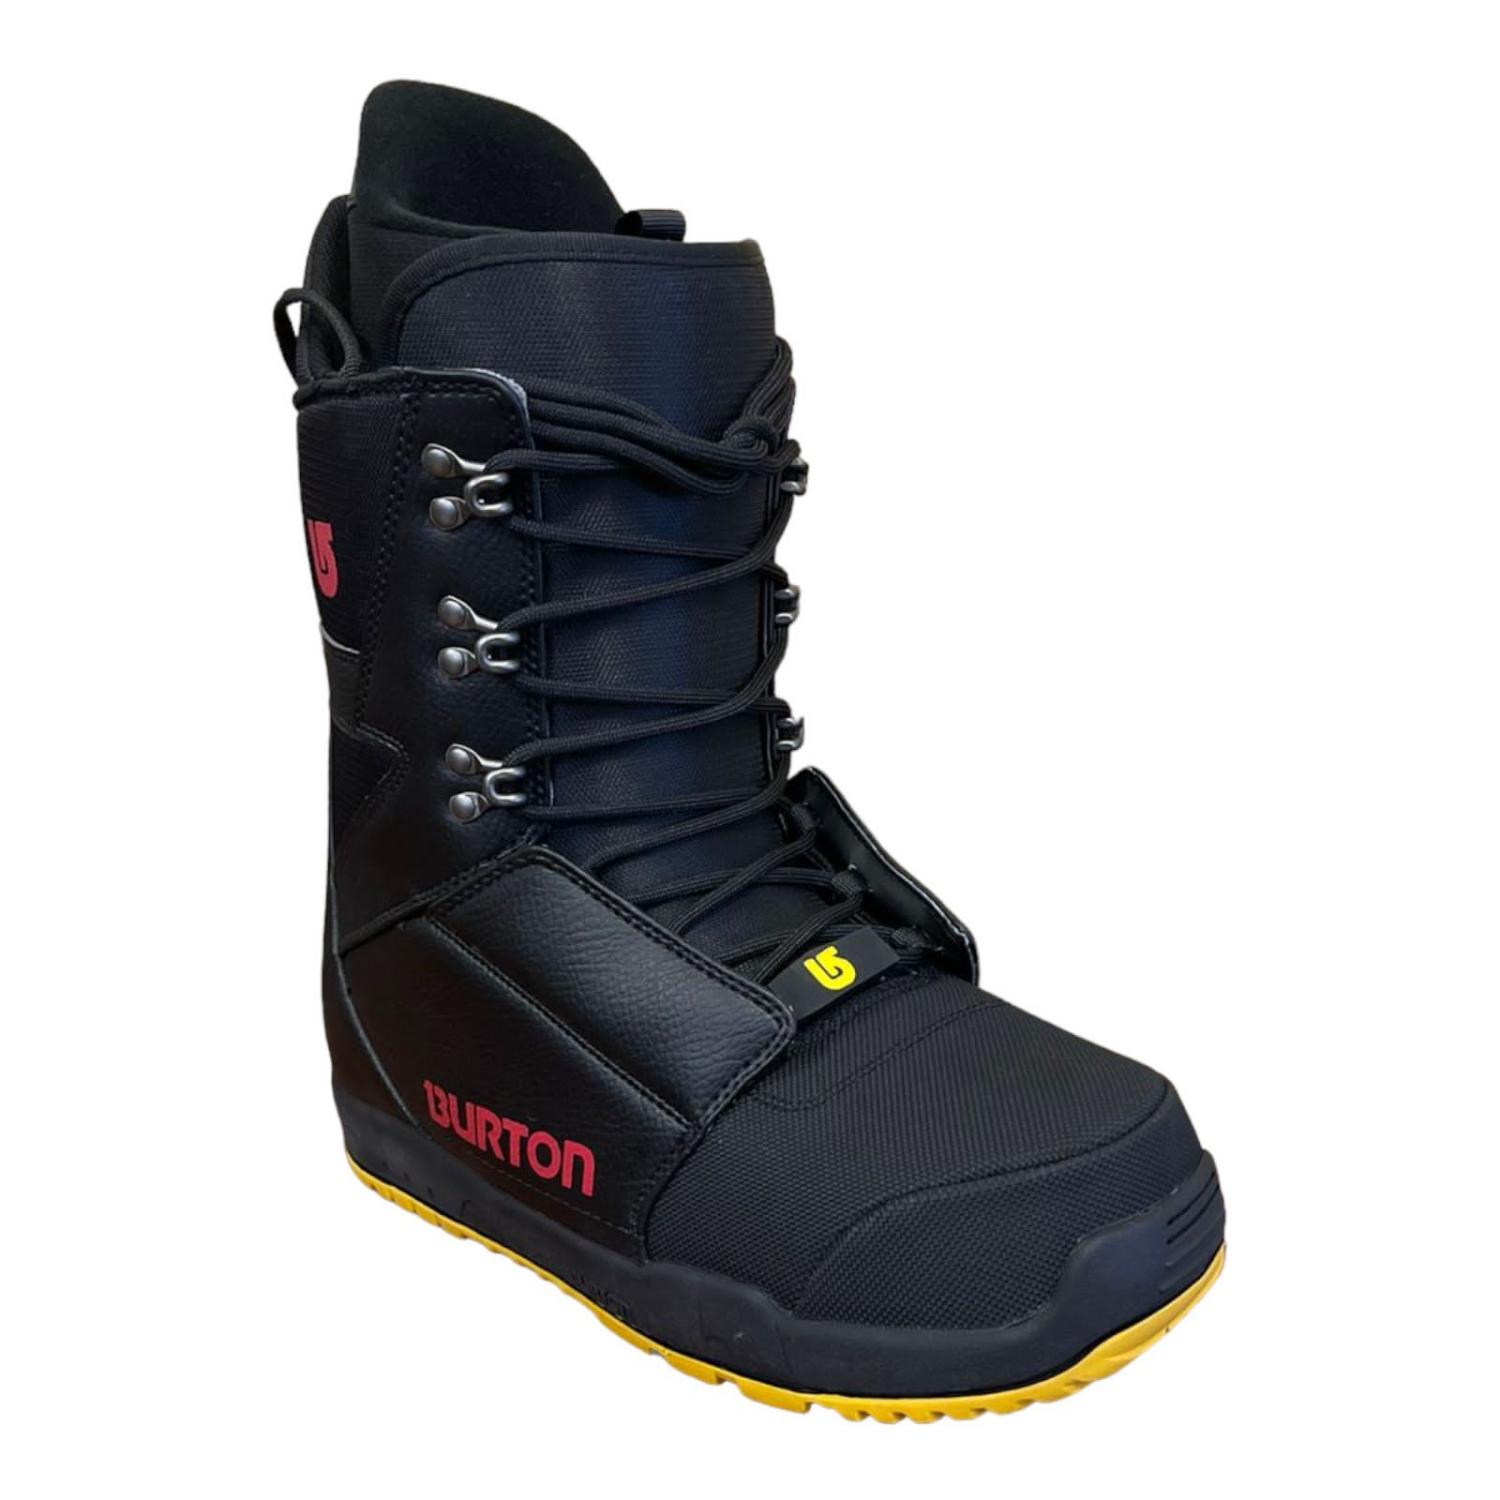 Ботинки сноубордические Burton 22-23 Progression MNS Black/Red, размер 43,0 EUR